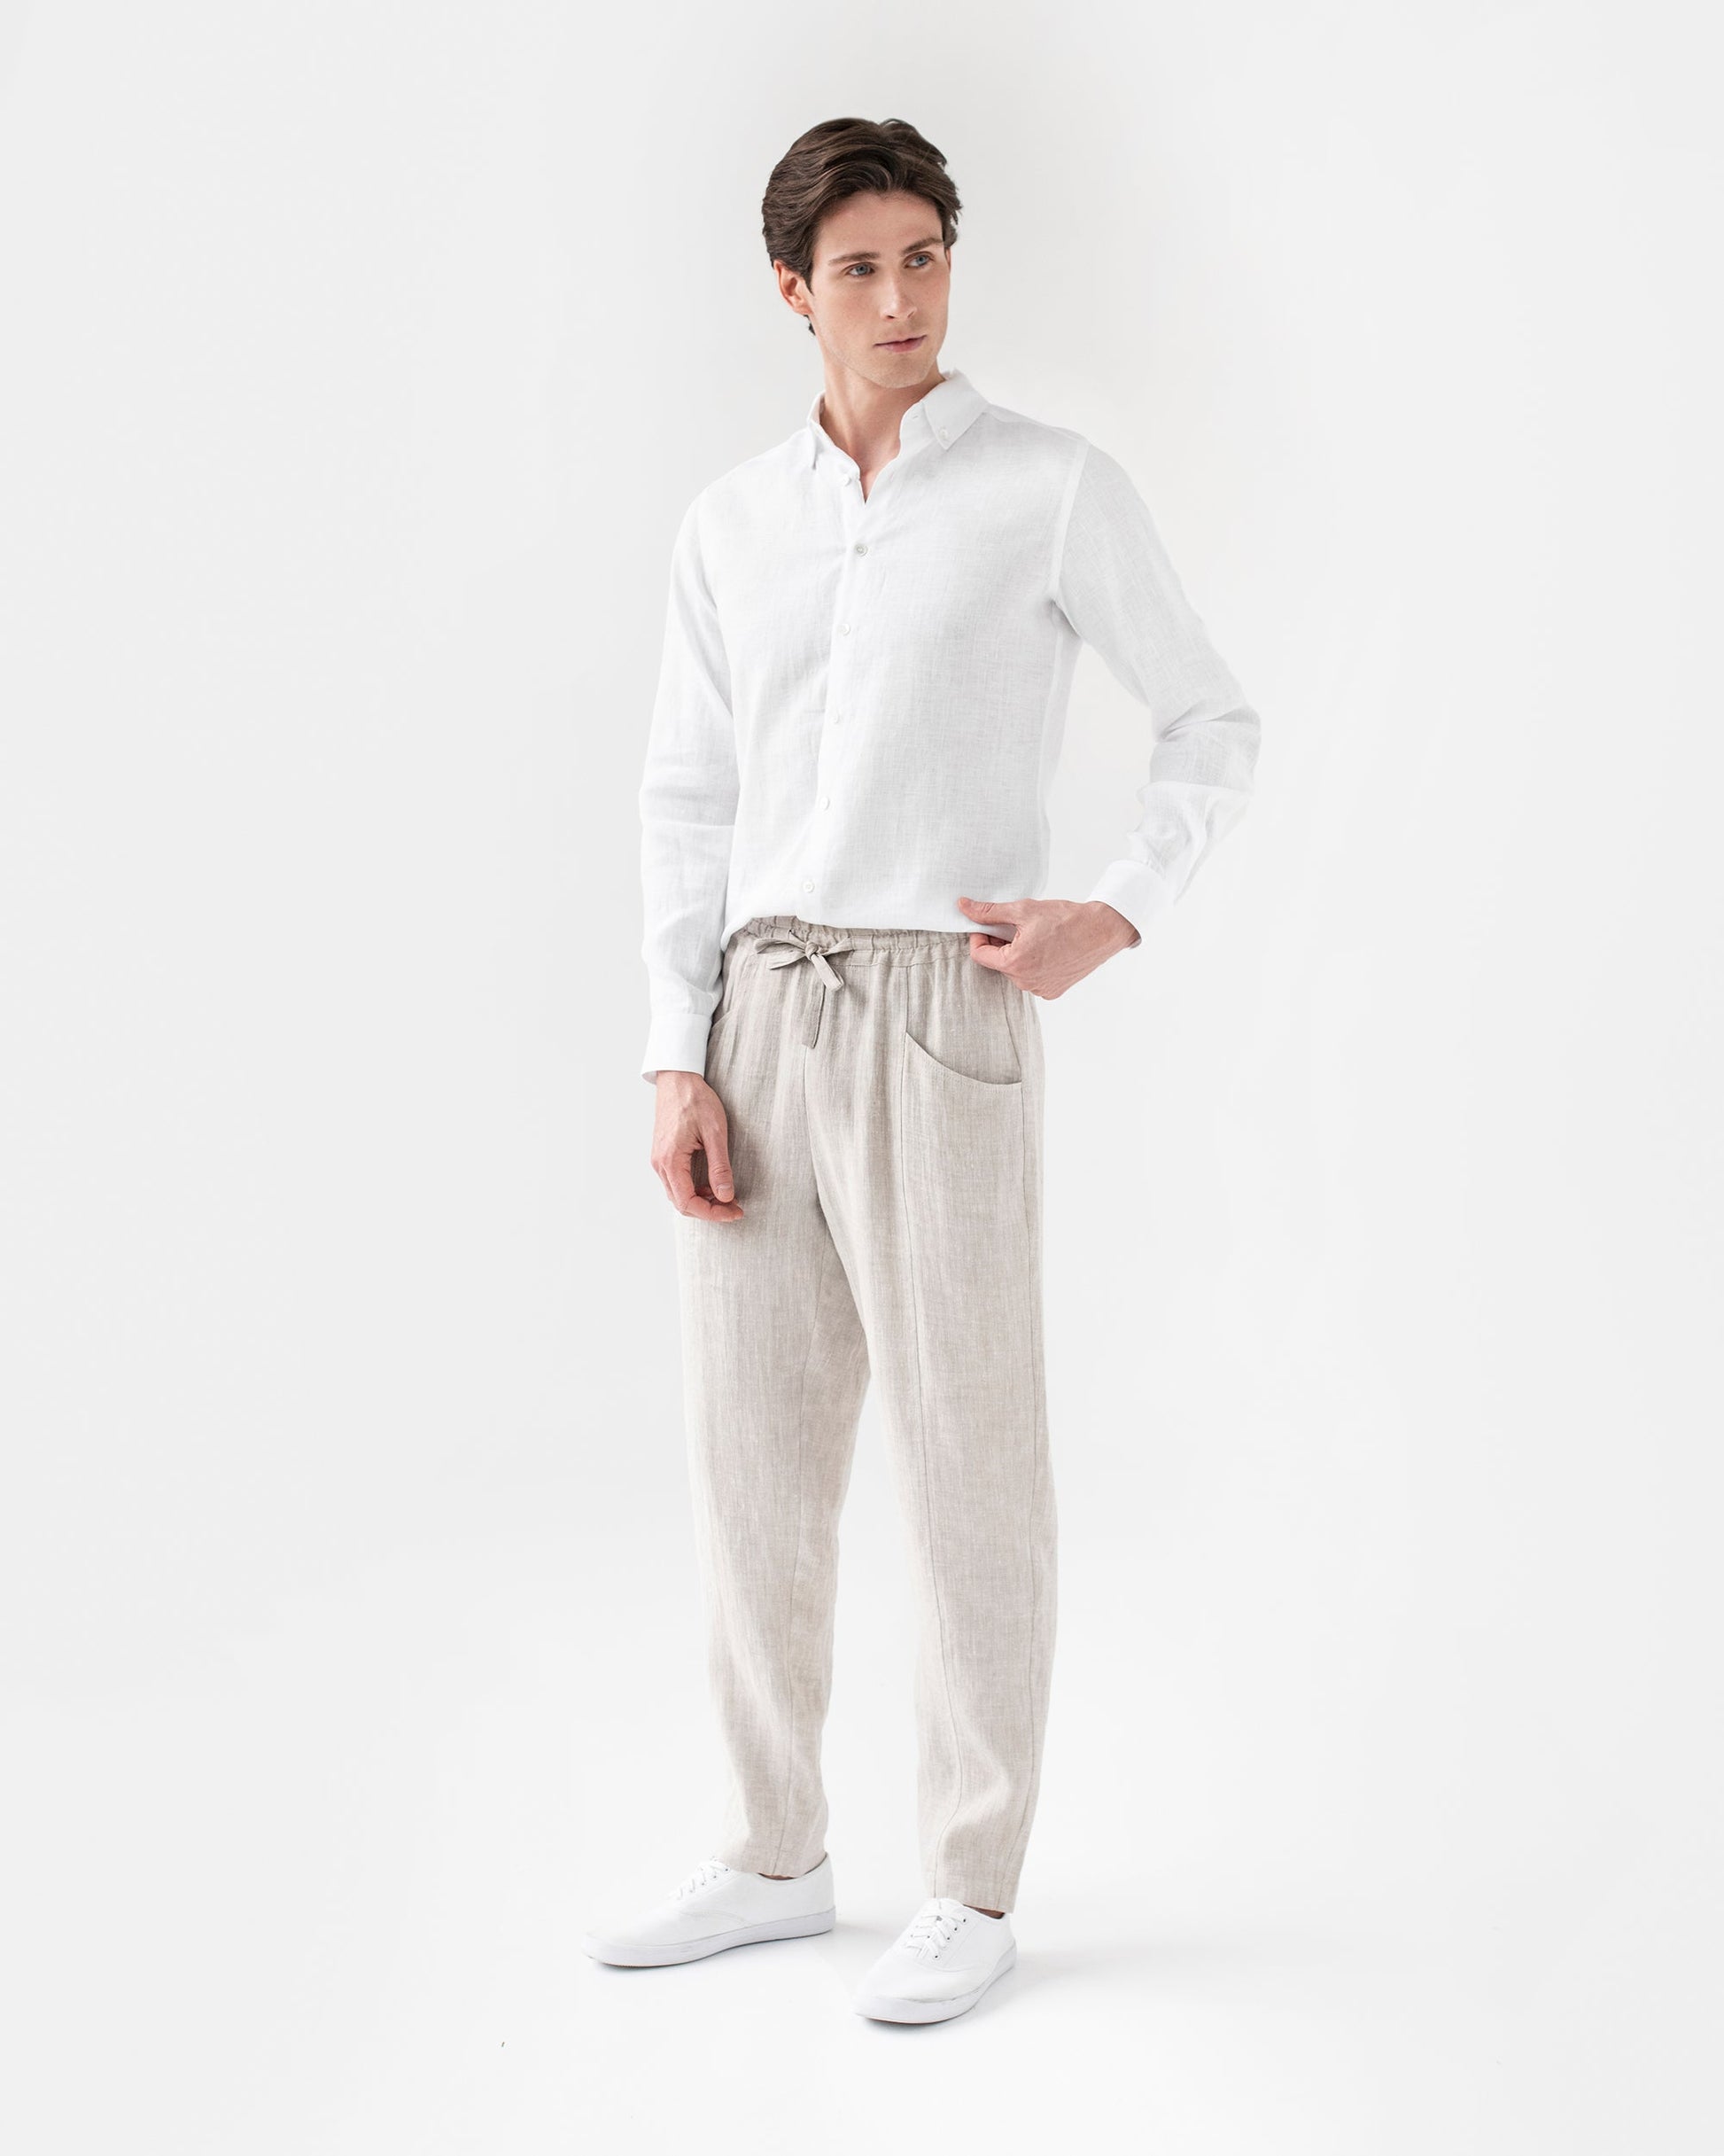 Men's linen pants TRUCKEE in natural melange - MagicLinen